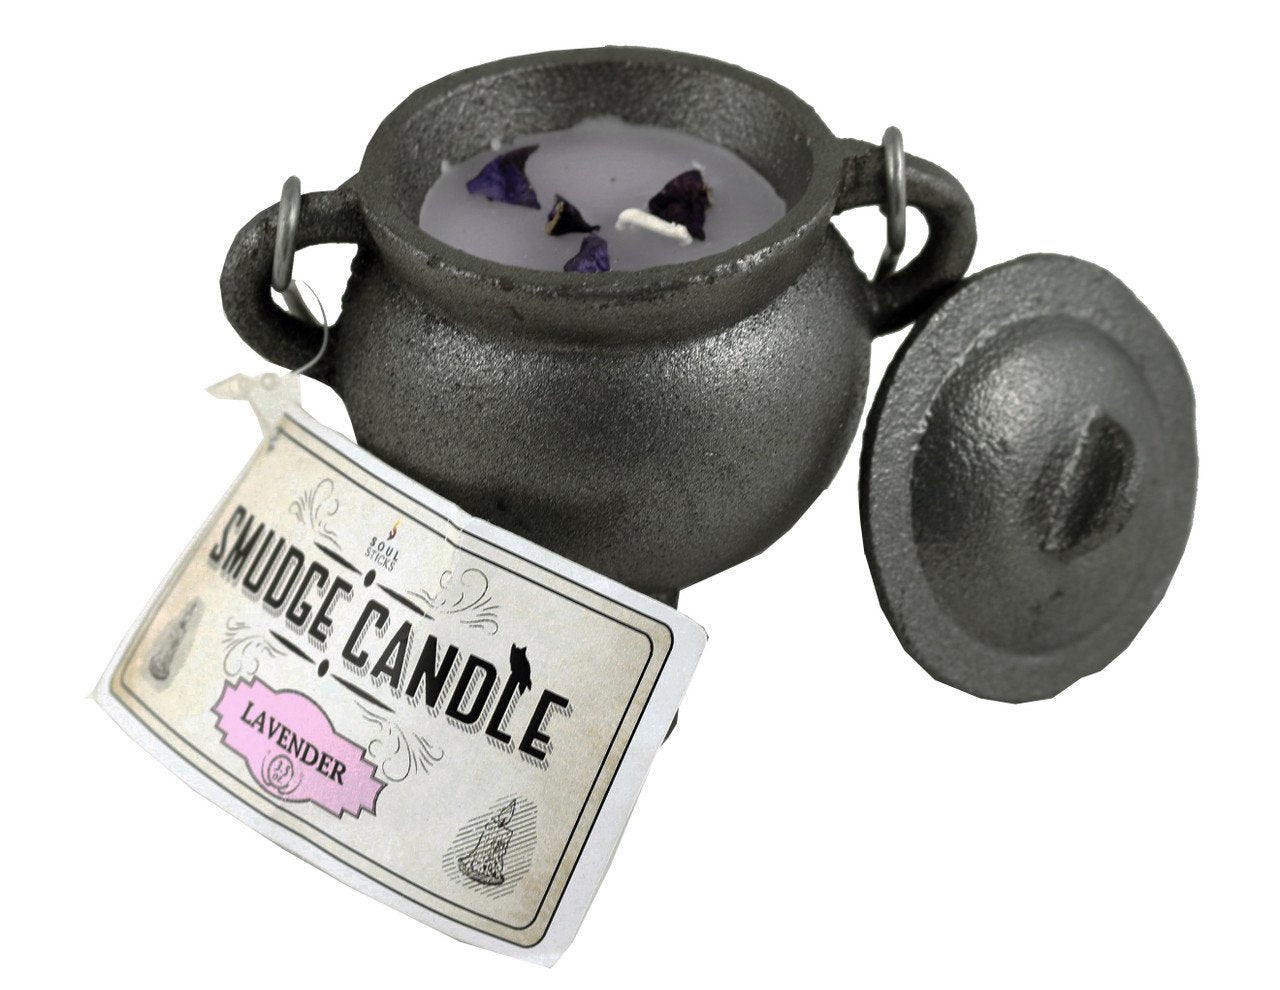 Cast Iron Cauldron Black Matt Smudge Candle with Lid - Lavender